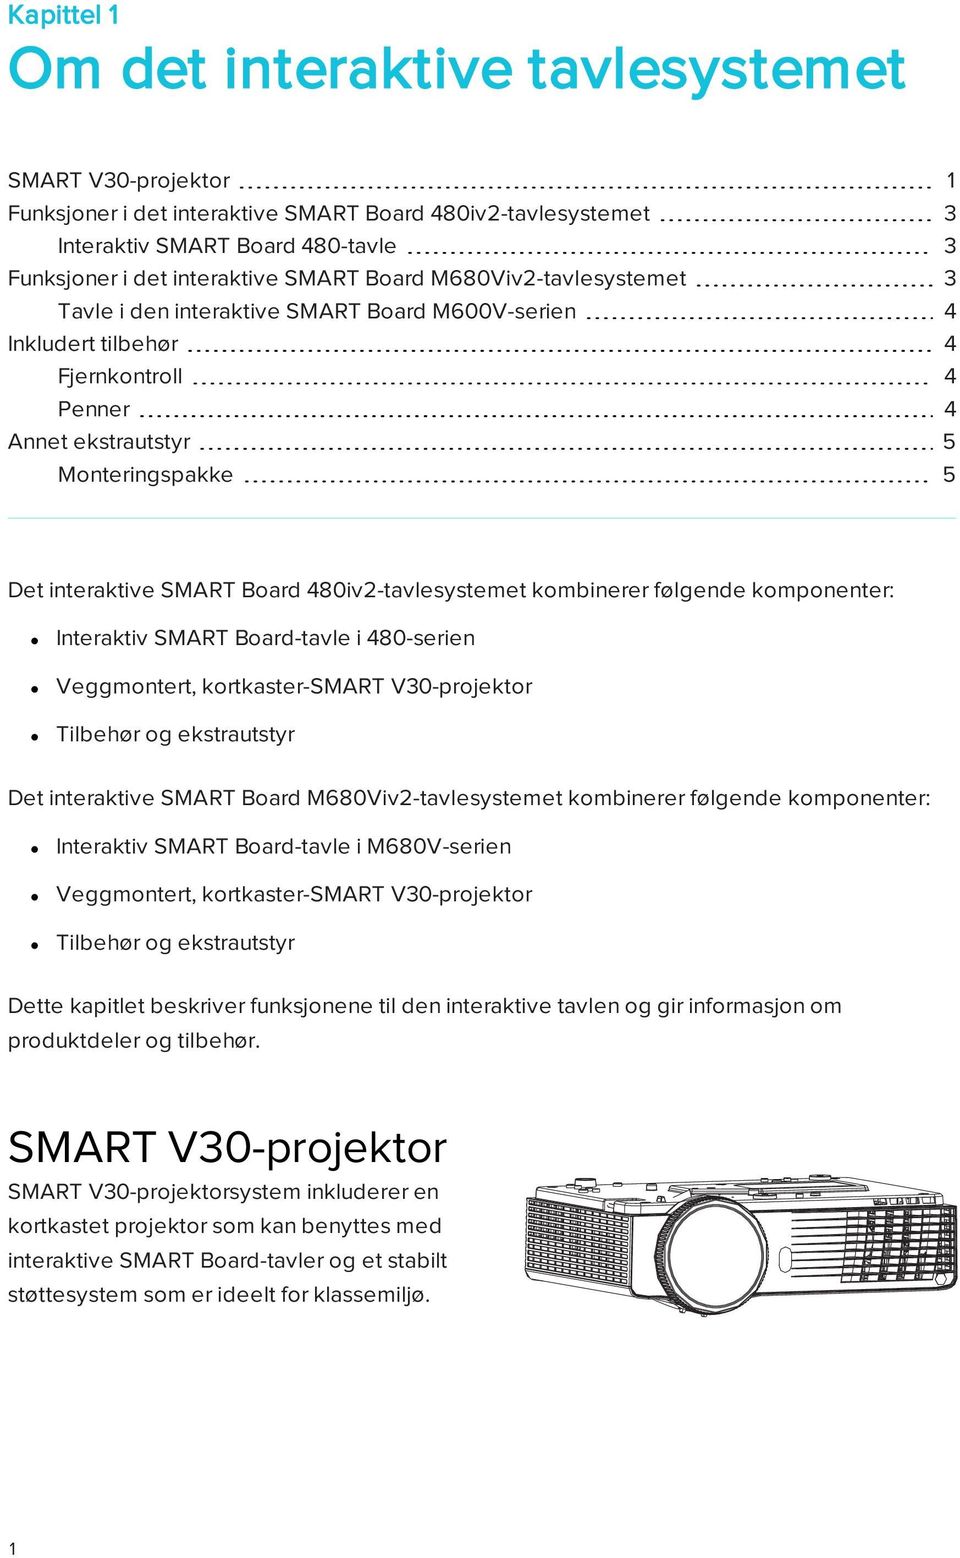 480iv2-tavlesystemet kombinerer følgende komponenter: Interaktiv SMART Board-tavle i 480-serien Veggmontert, kortkaster-smart V30-projektor Tilbehør og ekstrautstyr Det interaktive SMART Board